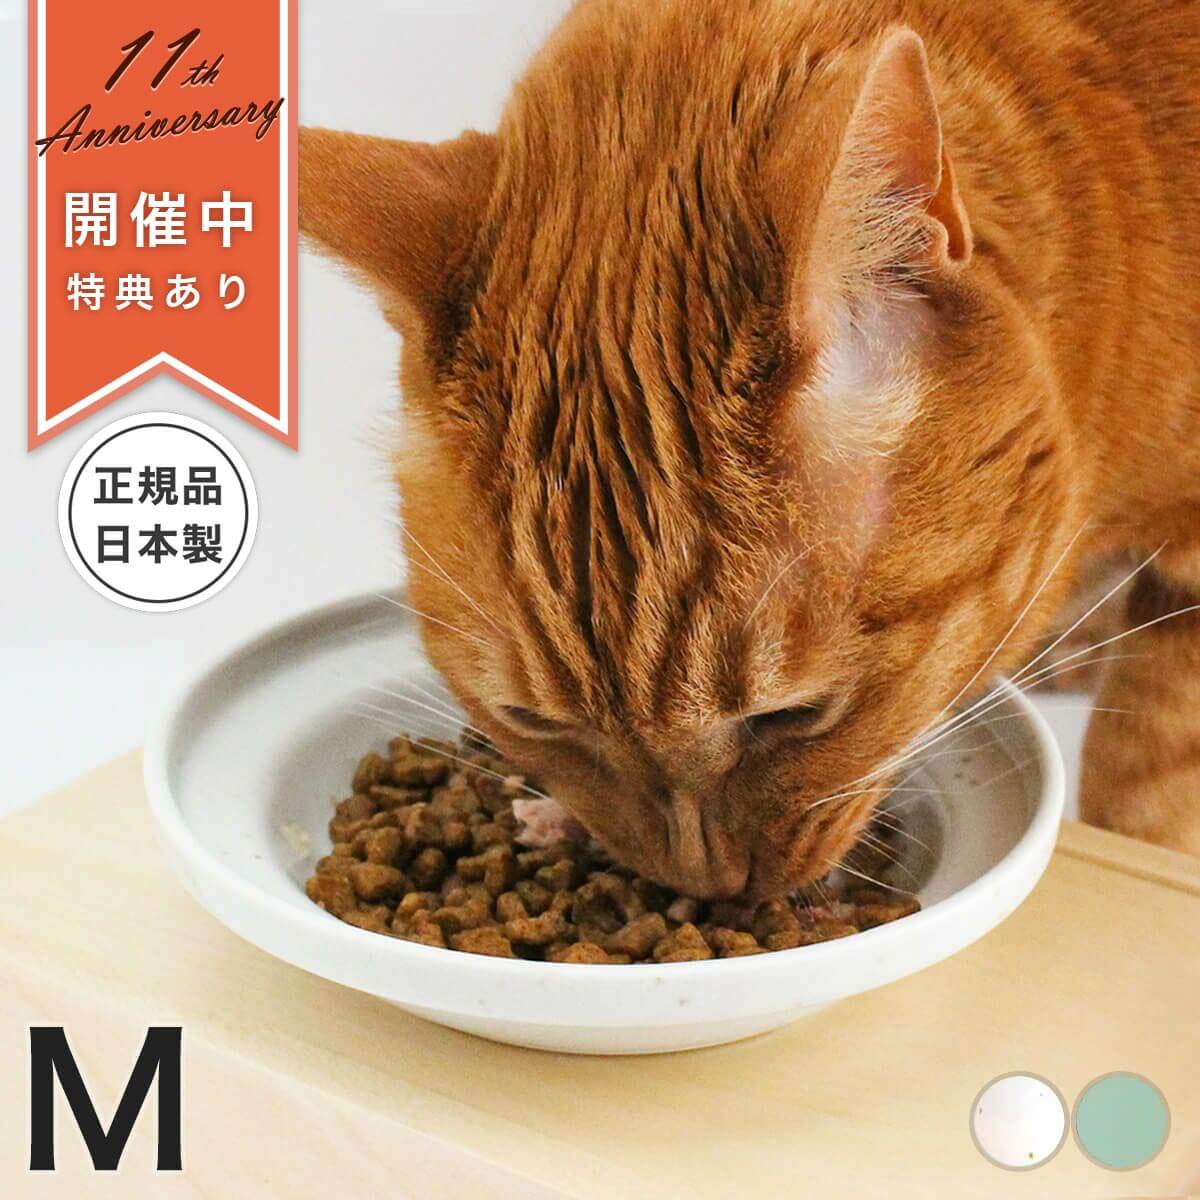 食べこぼし防止機能付きの餌皿 日本の熟練職人が作った 猫が食べやすい陶器の食器です 食器 餌皿 セール特価 M 猫 物品 ヘルスウォーター フードボウル